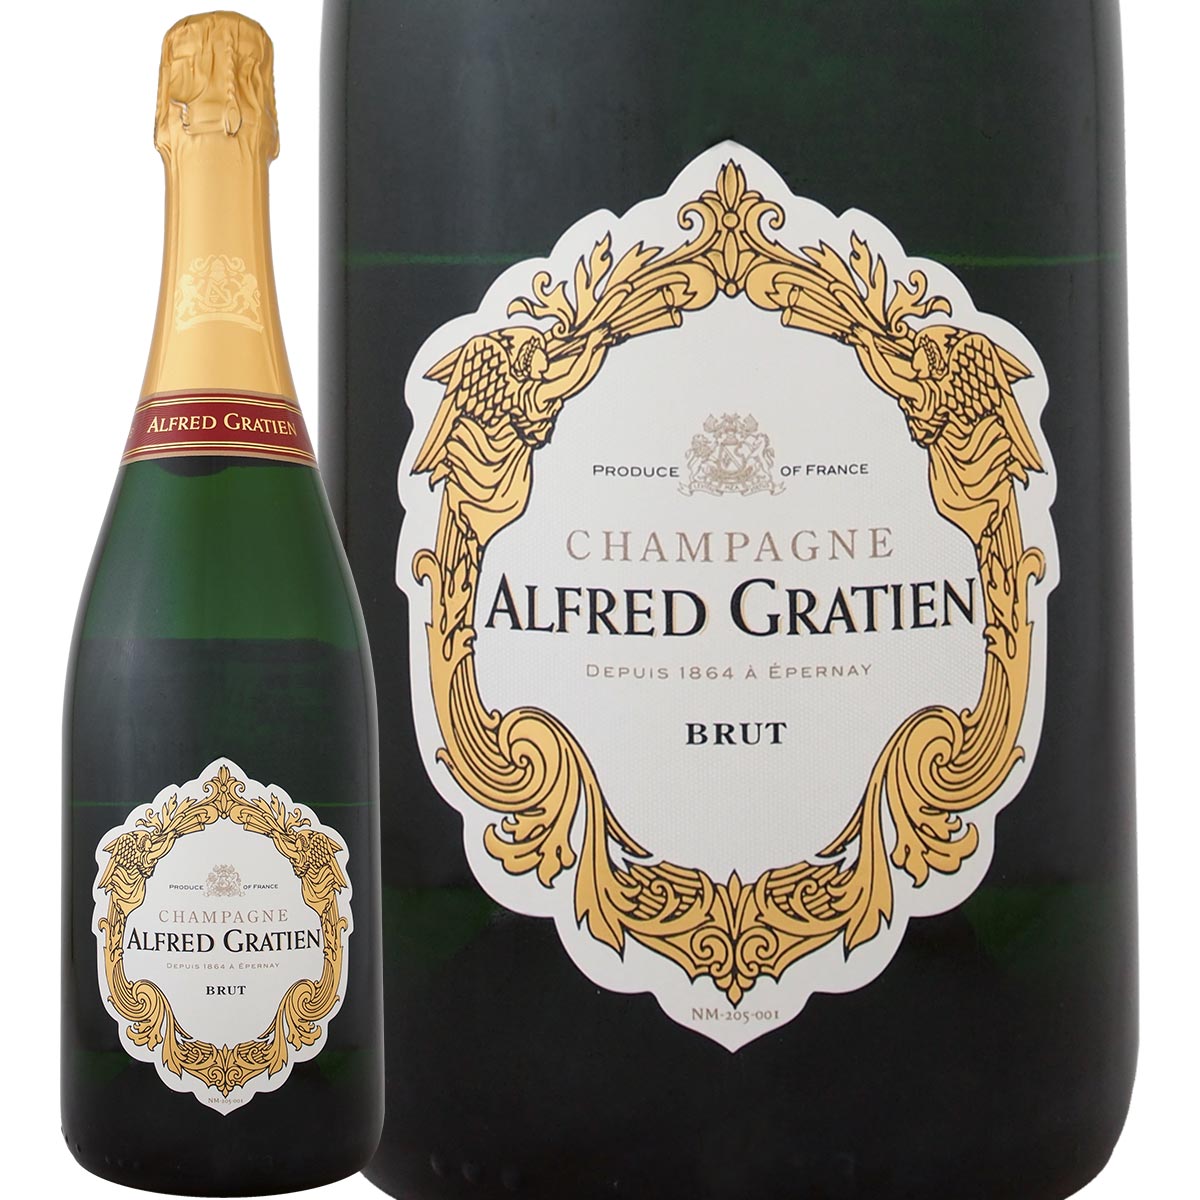 シャンパンのギフト シャンパーニュ・アルフレッド・グラシアン・ブリュット【シャンパン】【フランス】【スパークリング】【750ml】【Alfred Gratien】